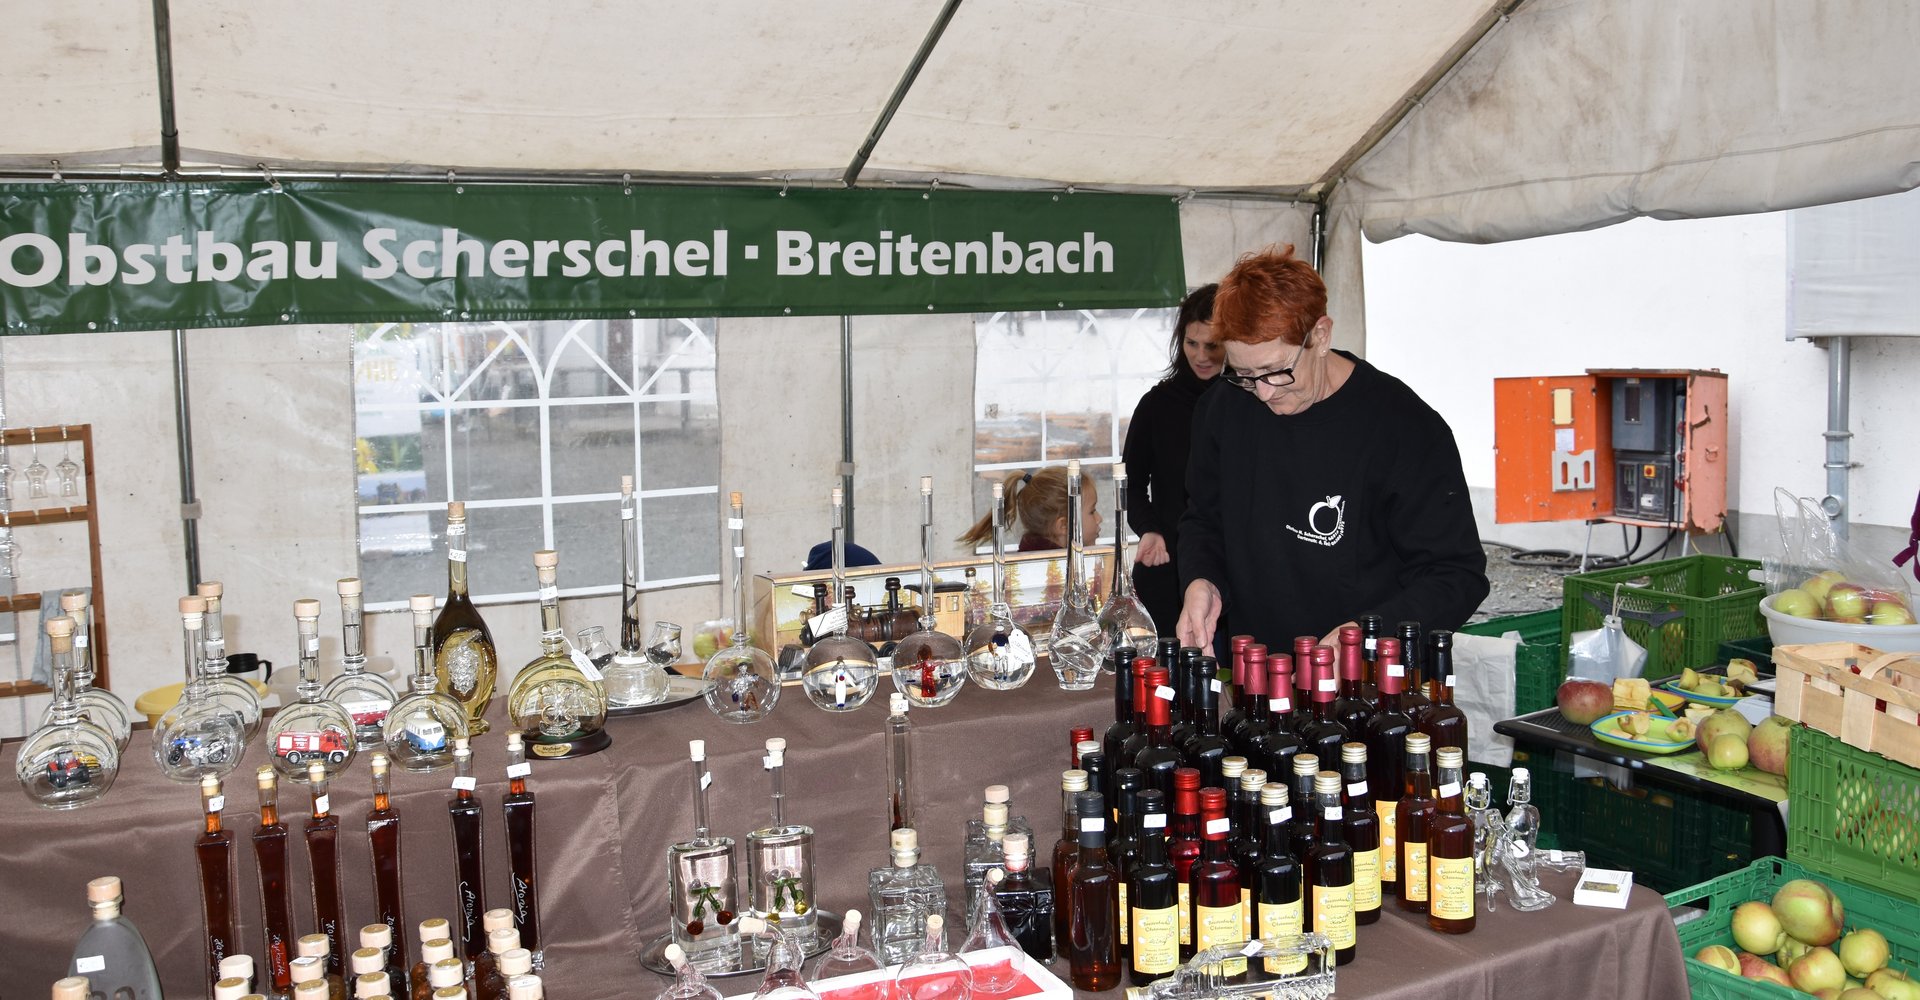 Verkaufsstand Obsbauer Scherschel beim Erntedankfest 2019